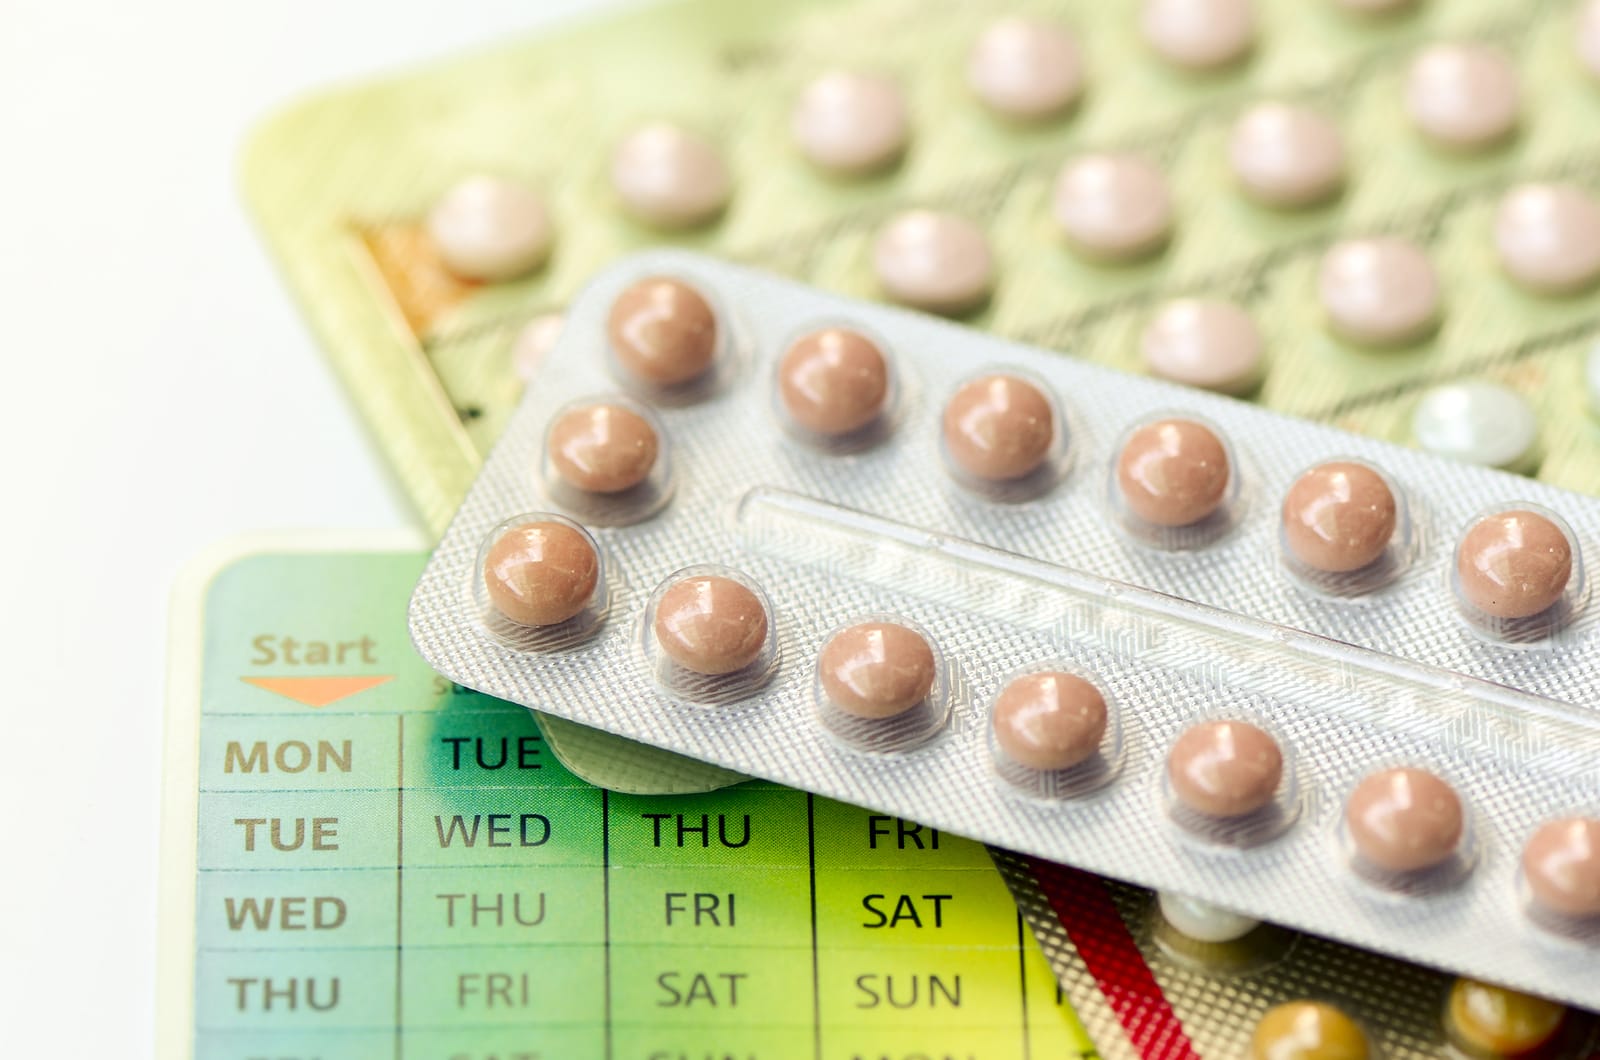 antykoncepcja hormonalna skutki uboczne dieta